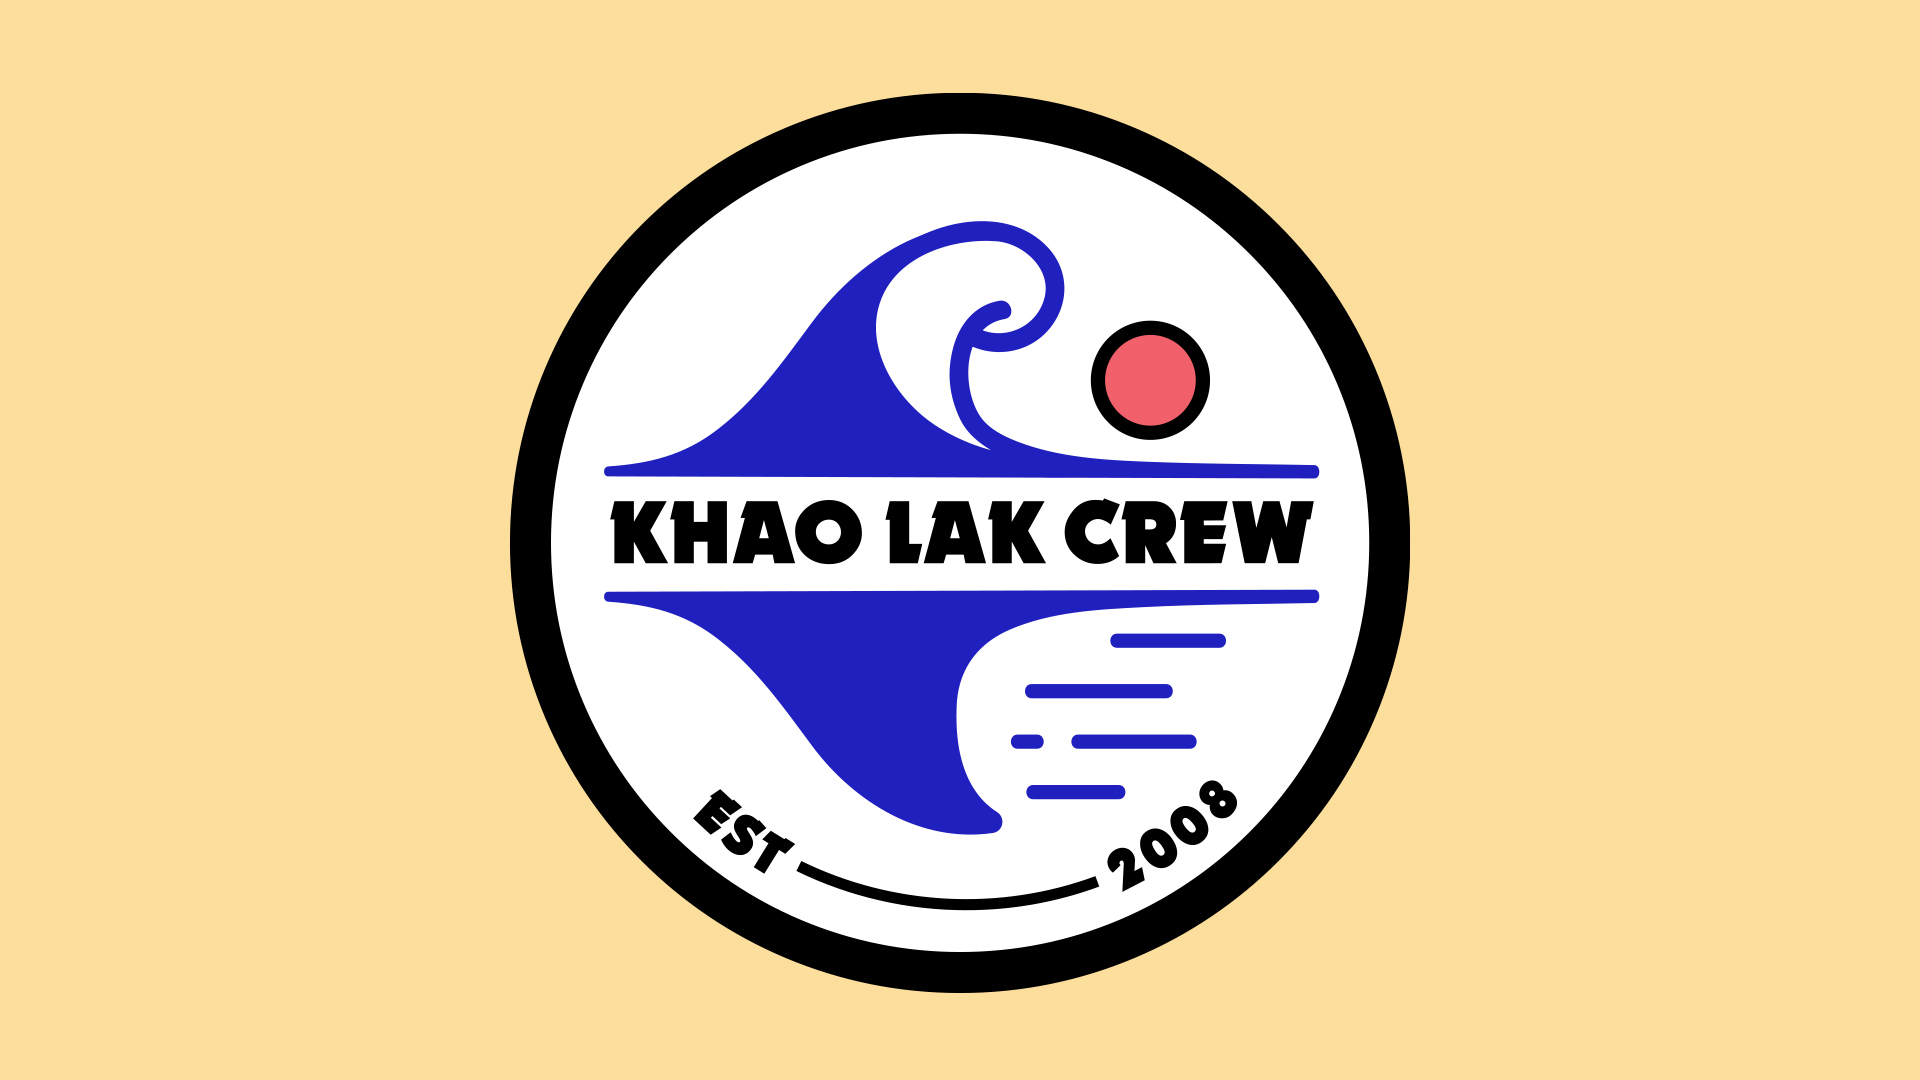 KhaoLakCrew_colourBG